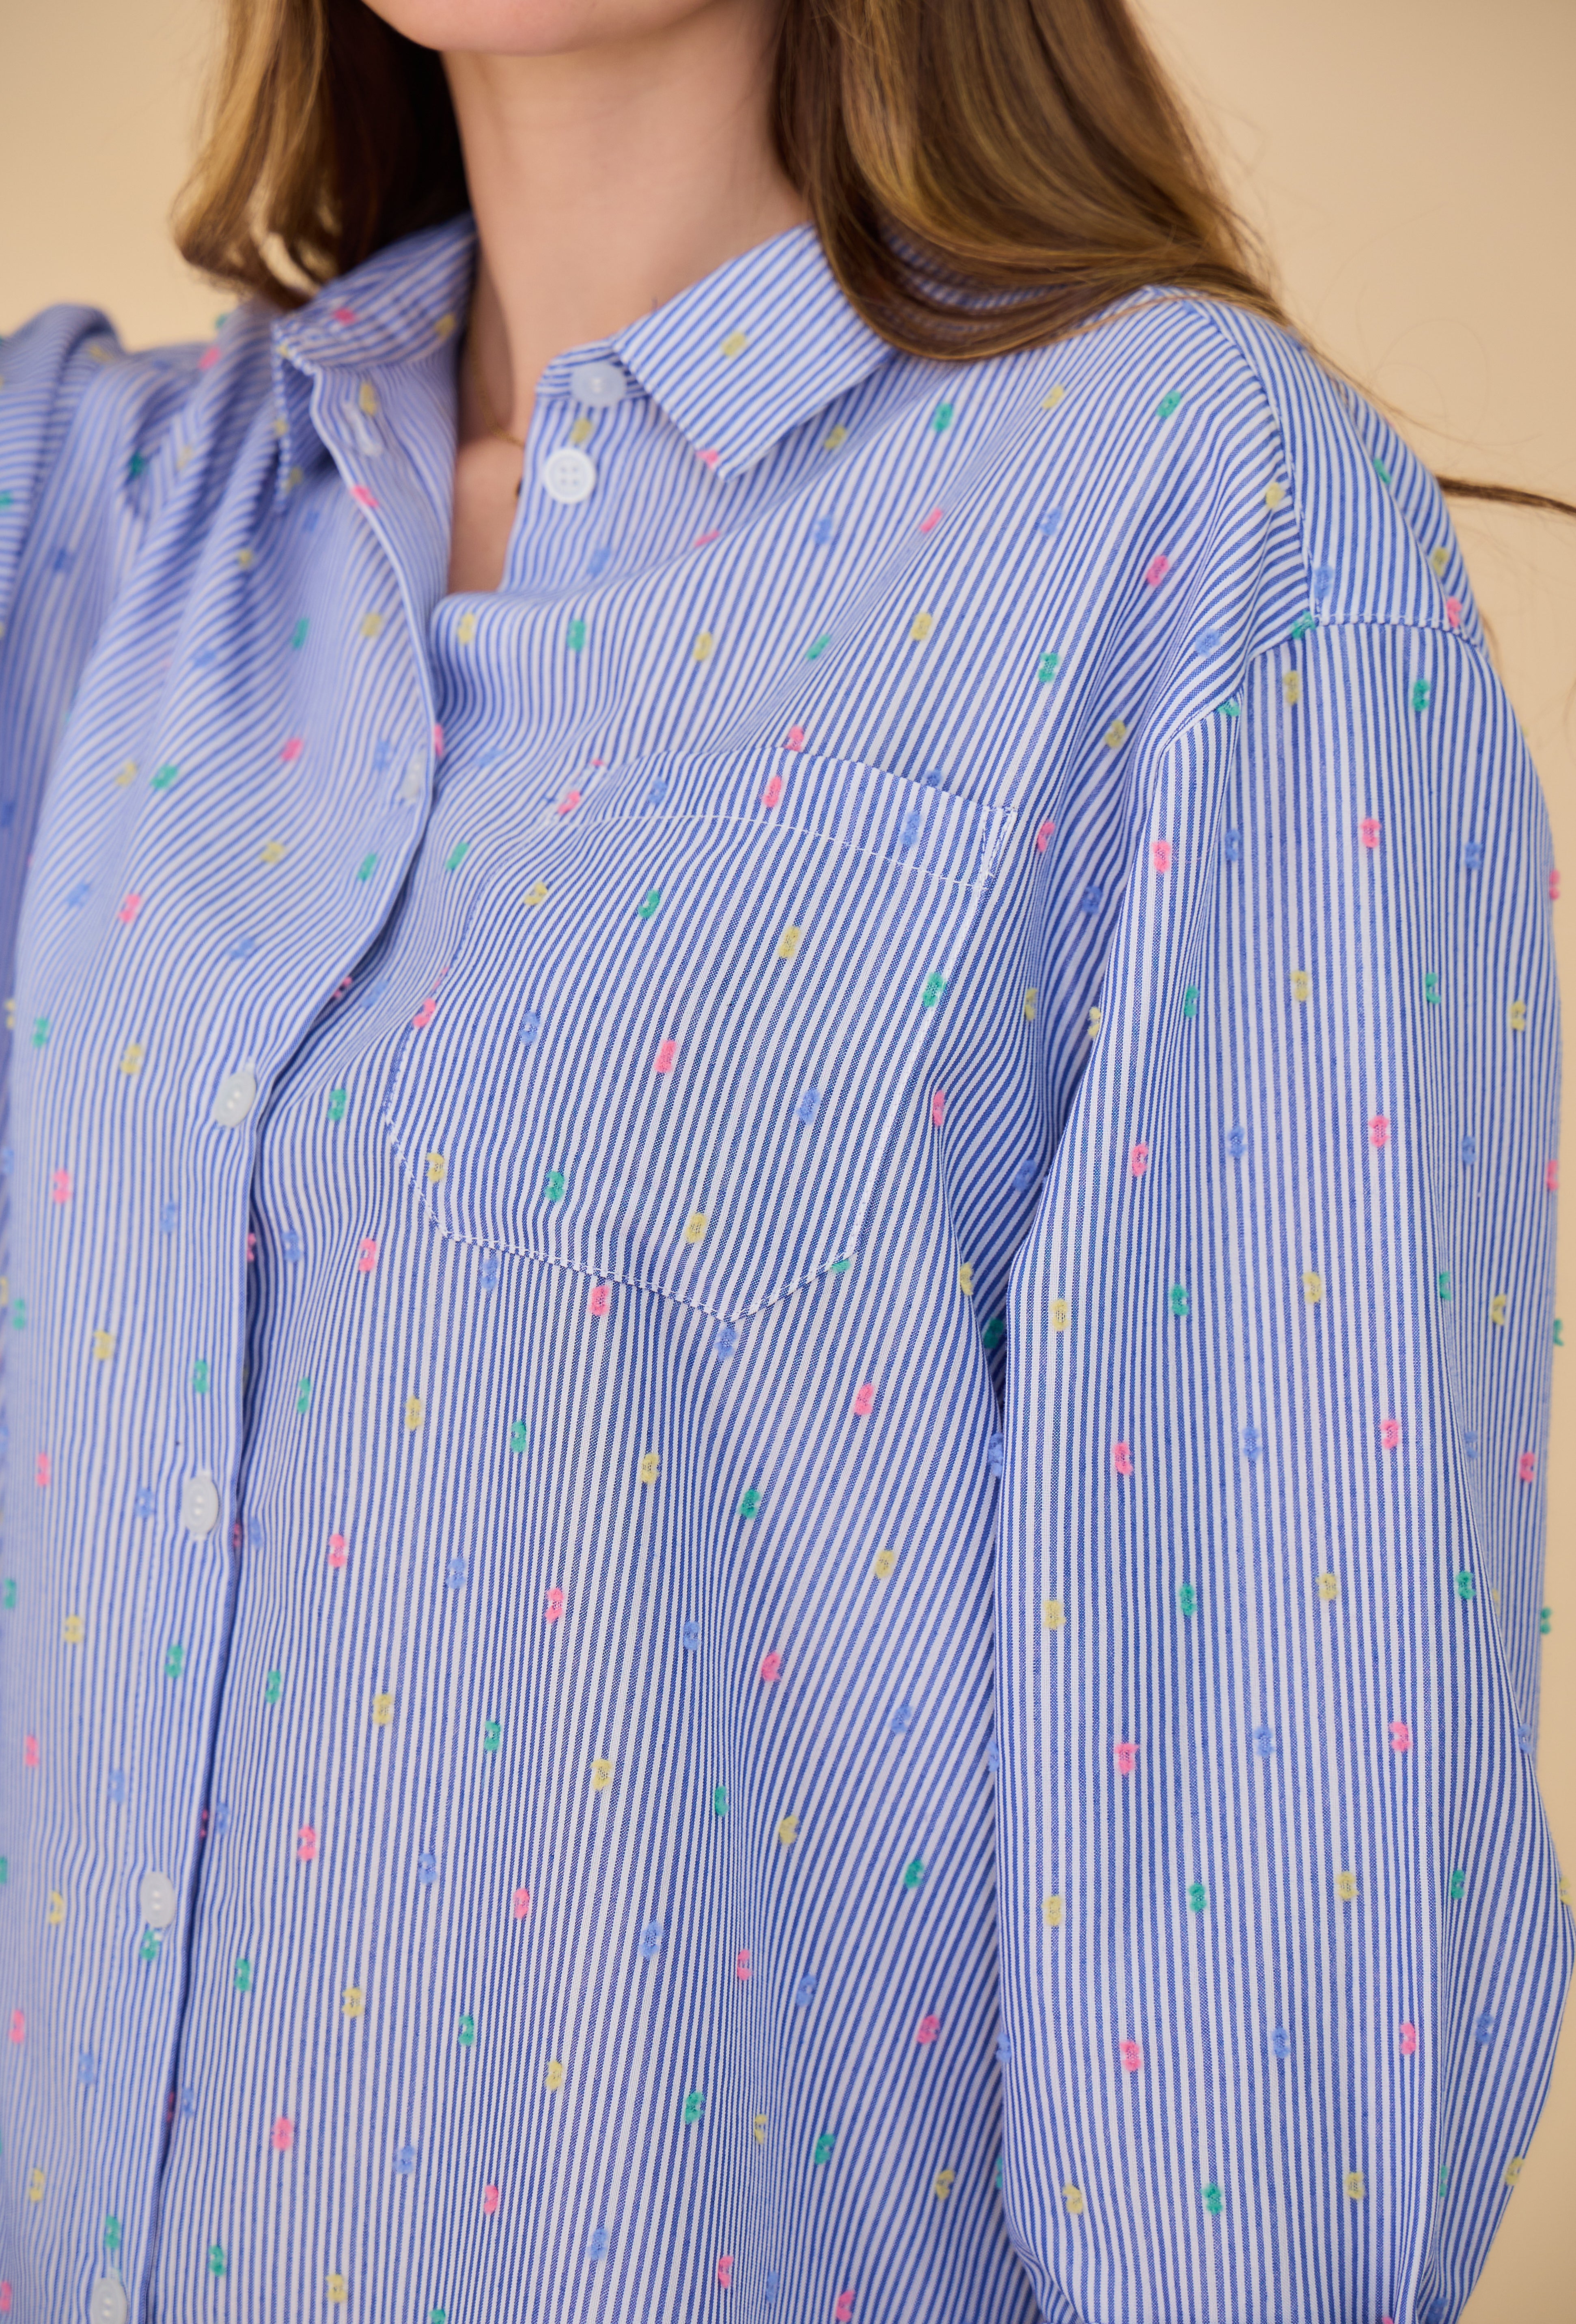 chemise bleue rayée à plumetis multicolores, poche plaqué haut gauche, col français, zoom poche